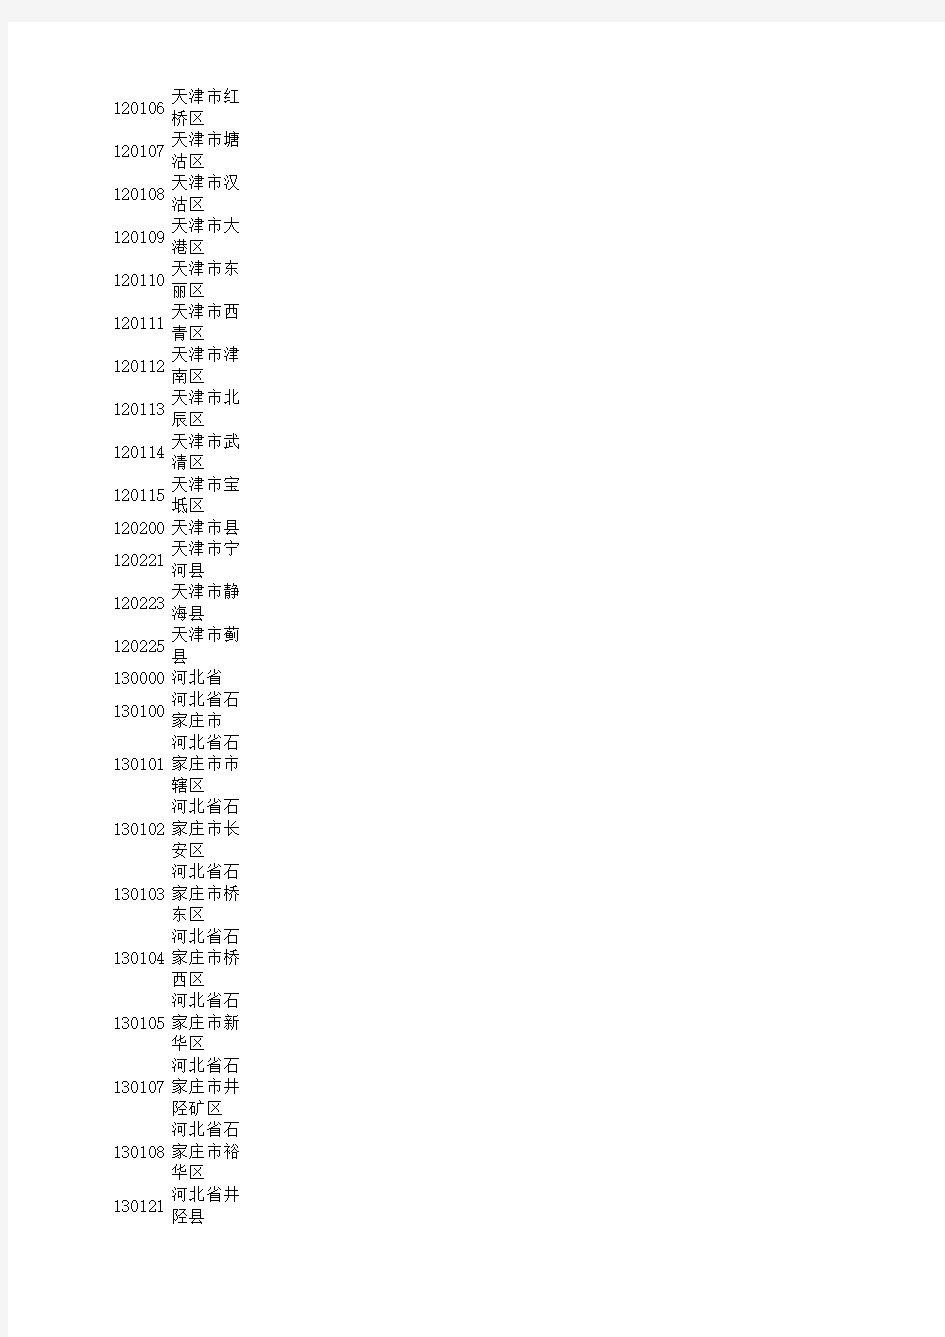 中国各省行政区划代码表